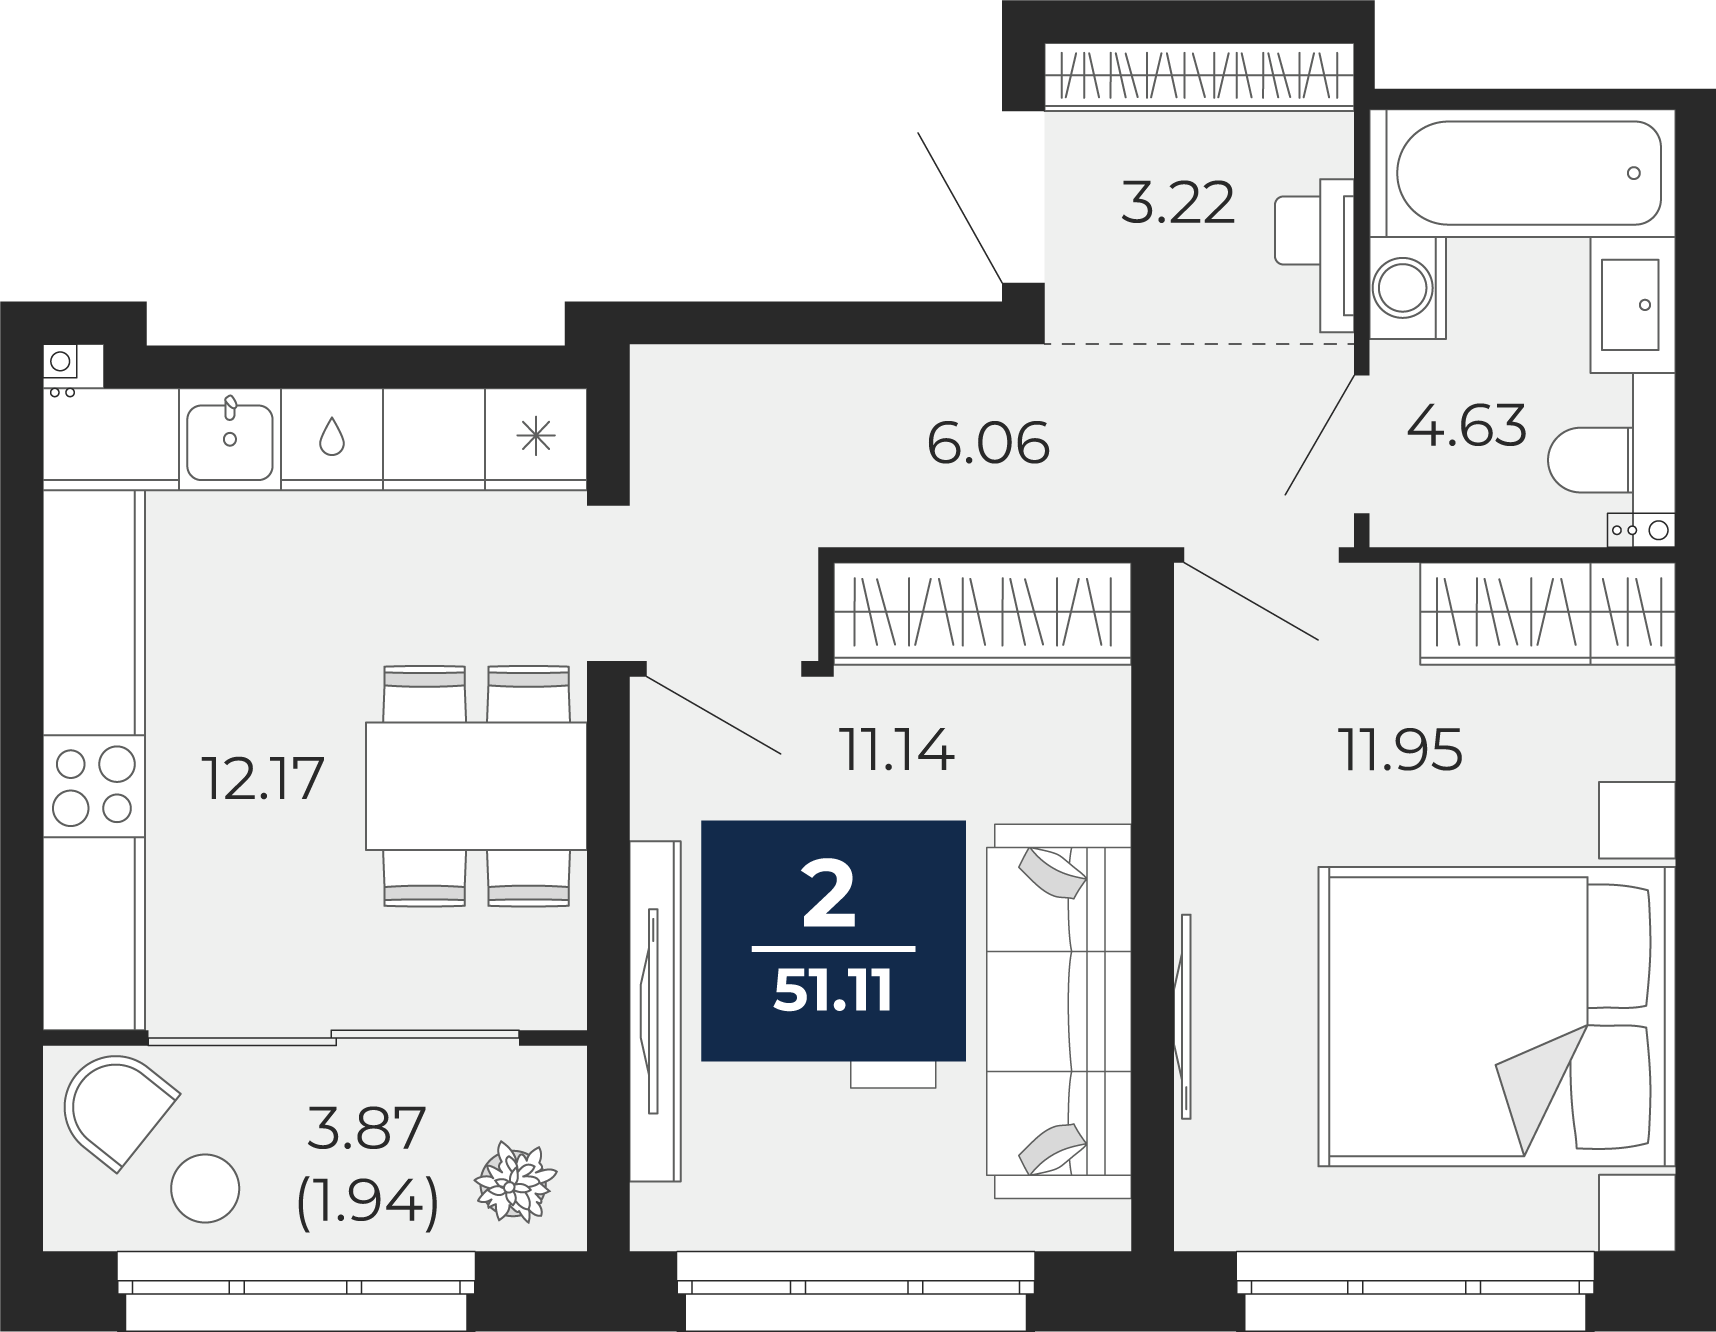 Квартира № 44, 2-комнатная, 51.11 кв. м, 10 этаж